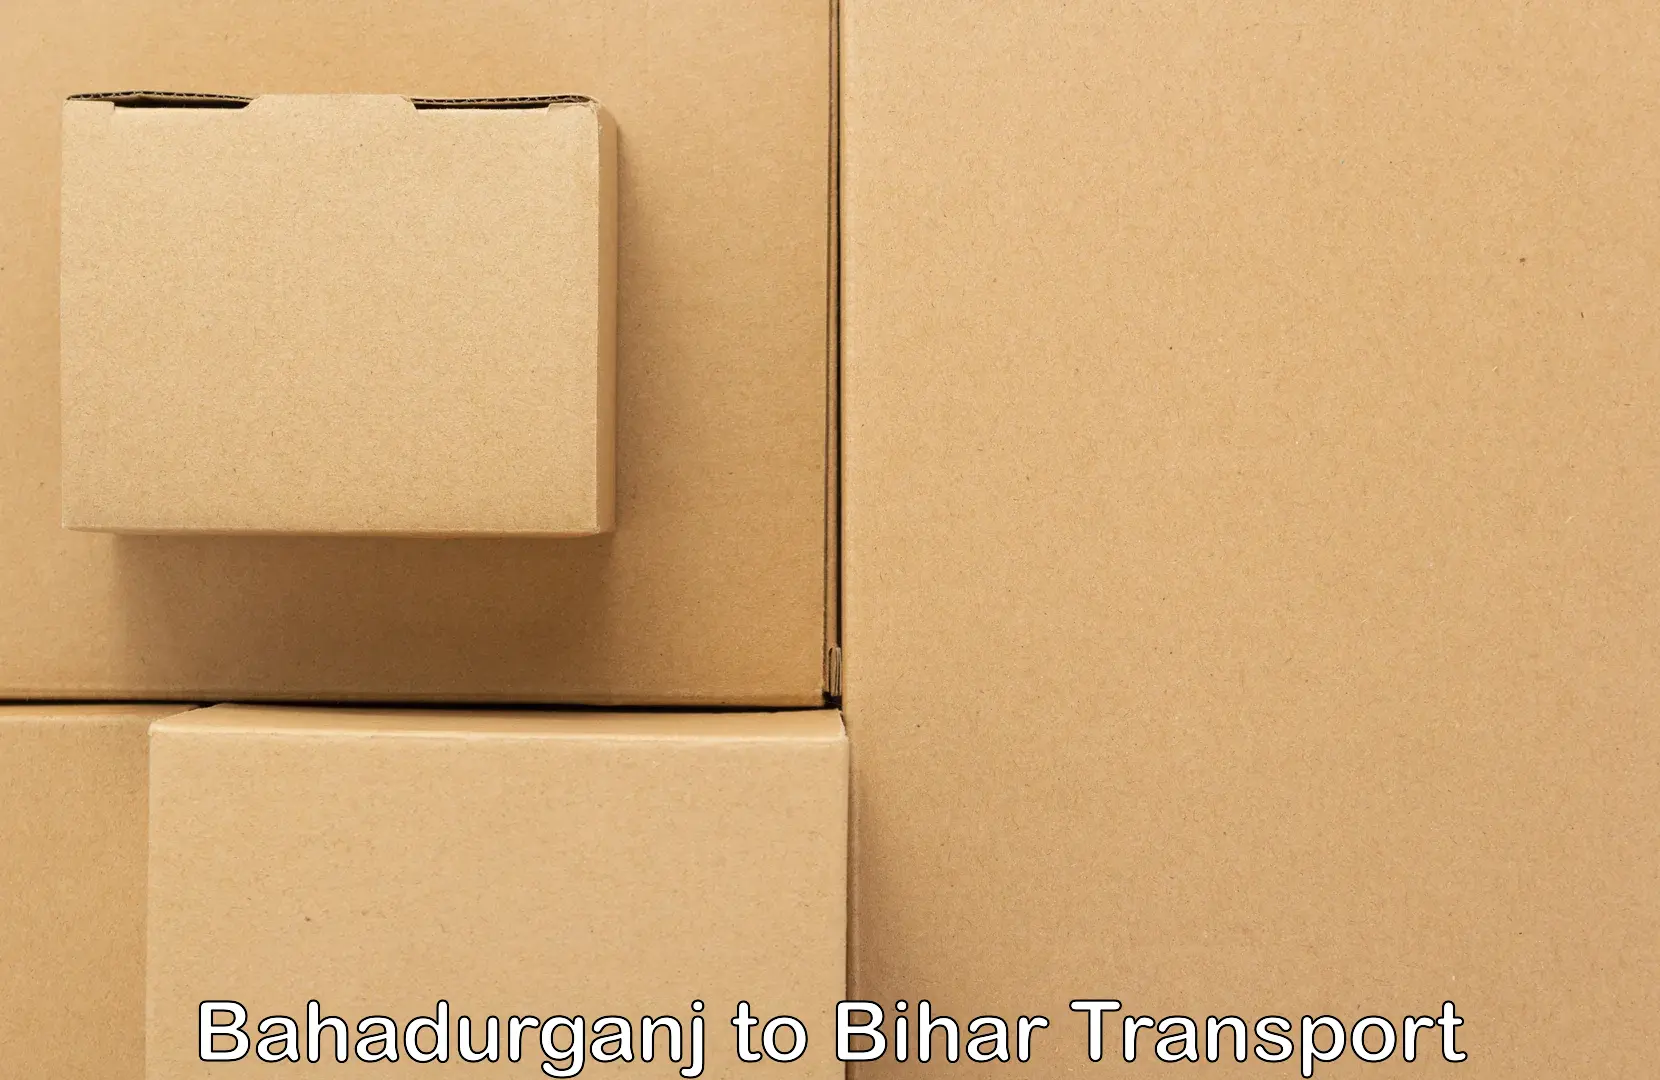 Truck transport companies in India in Bahadurganj to Barhiya